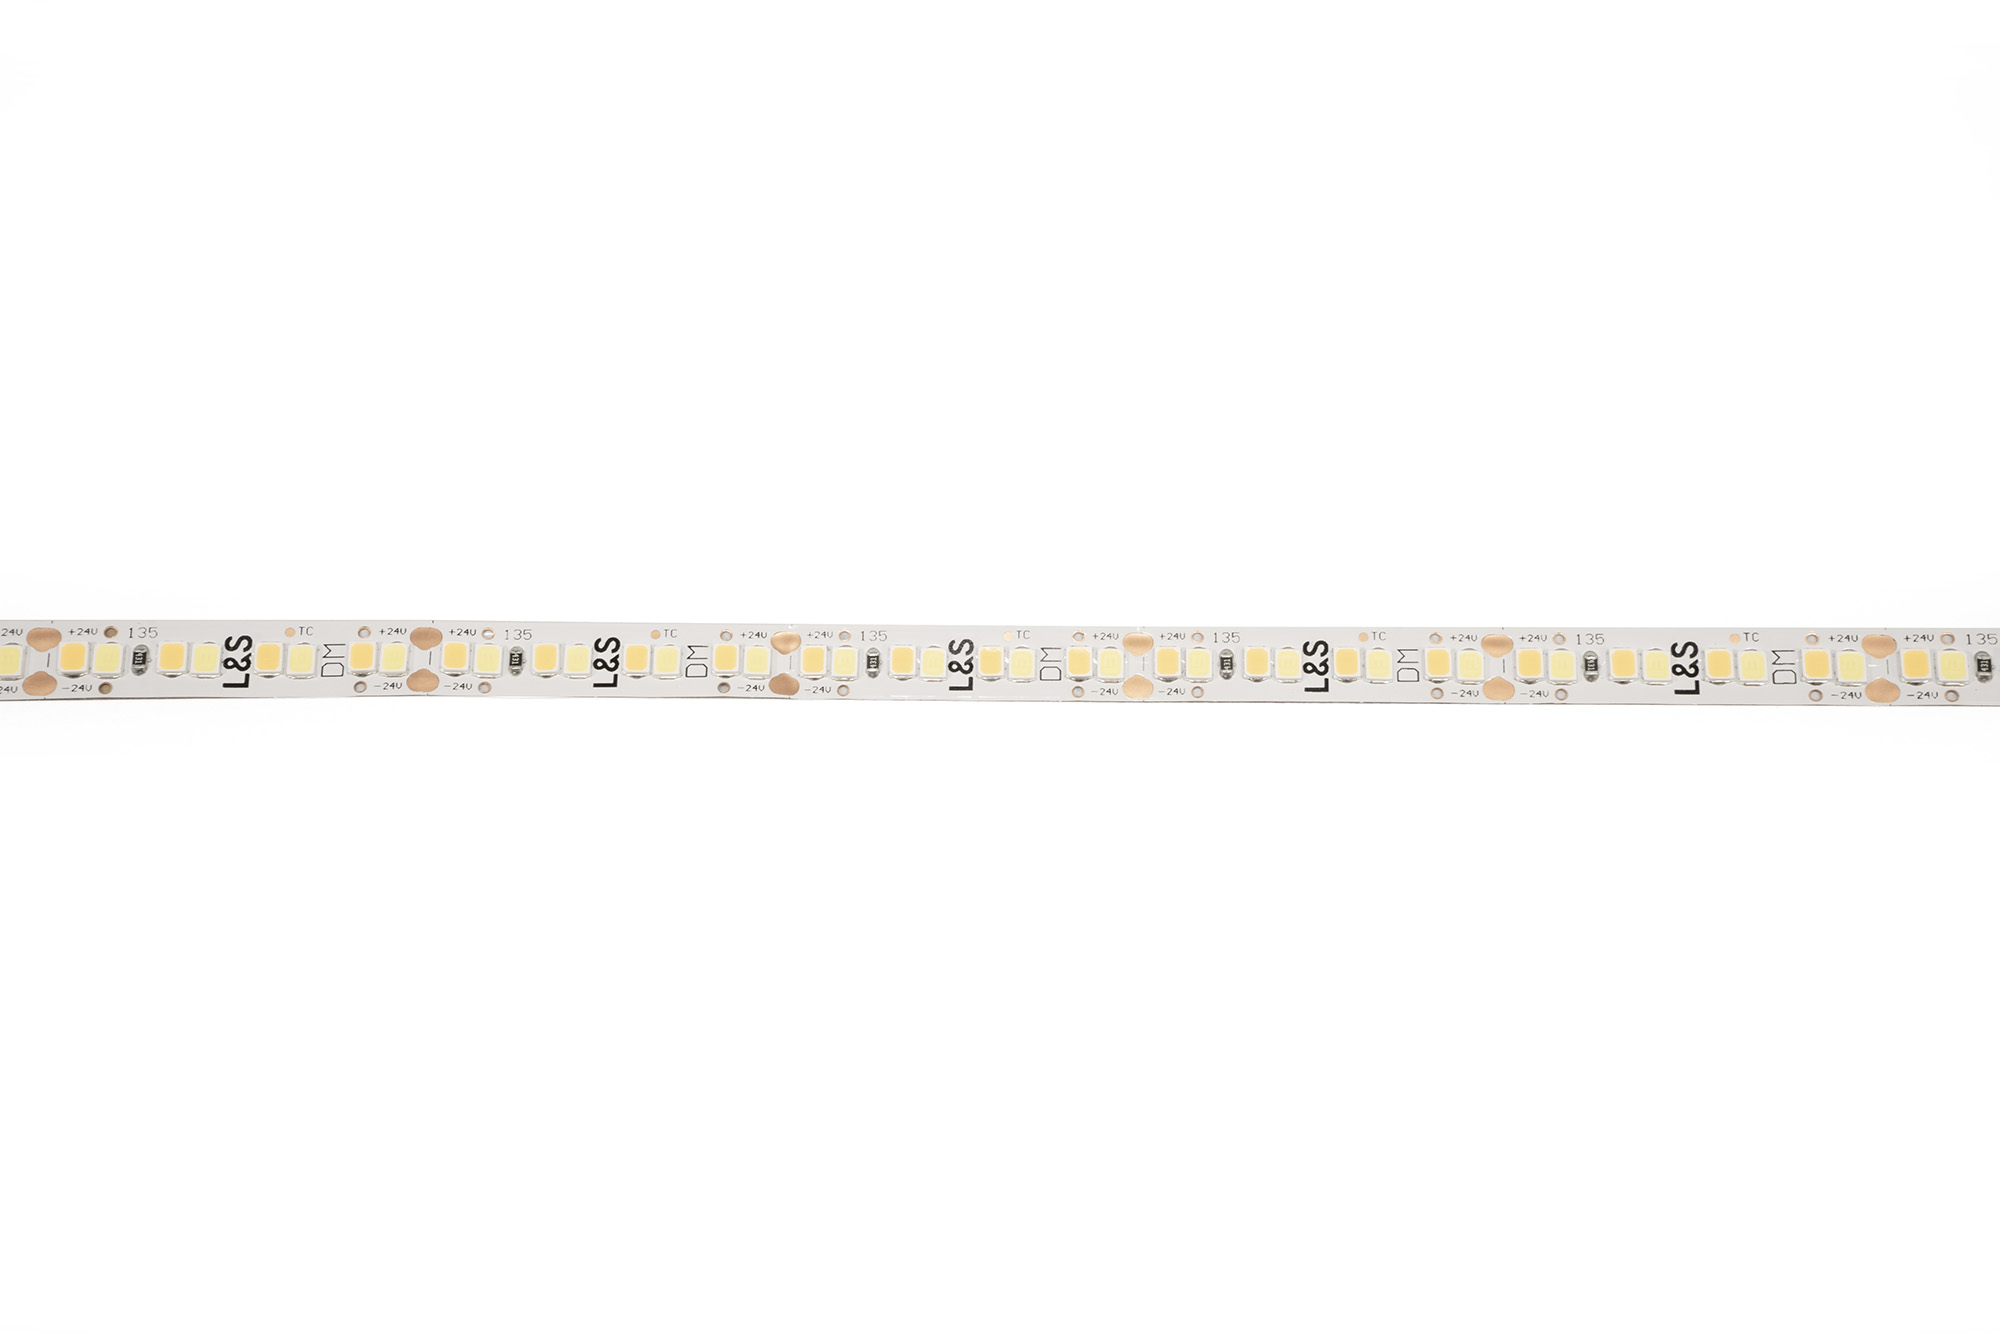 L&S LED-Band HE 112+112LEDs/m (2835), 2700-4000K, 4+4LEDs/35,7mm, 24DC, 4W/m, 8mmx321mm, mit 1x Anschlussltg. 200mm, white PCB, IP20,